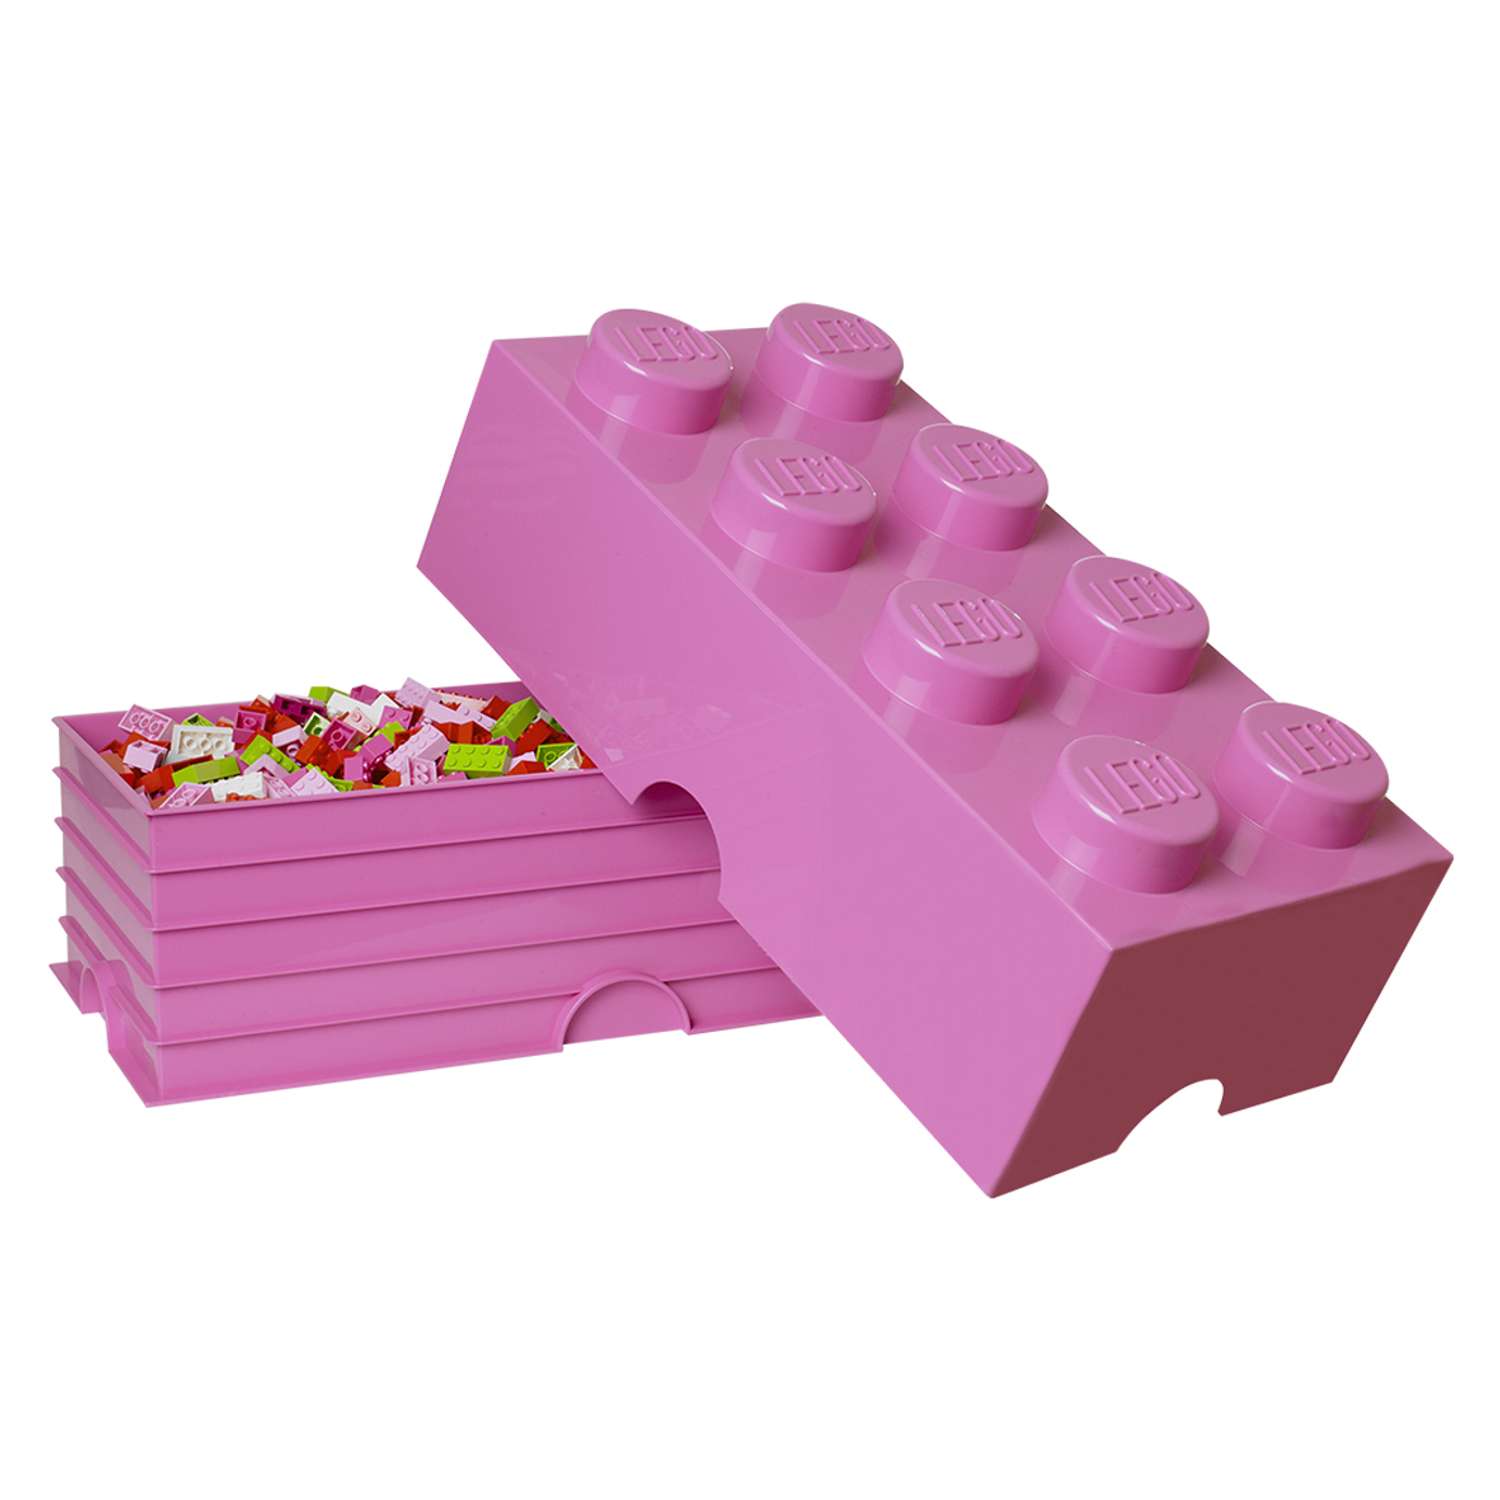 Ящик для игрушек LEGO Friends лиловый - фото 3